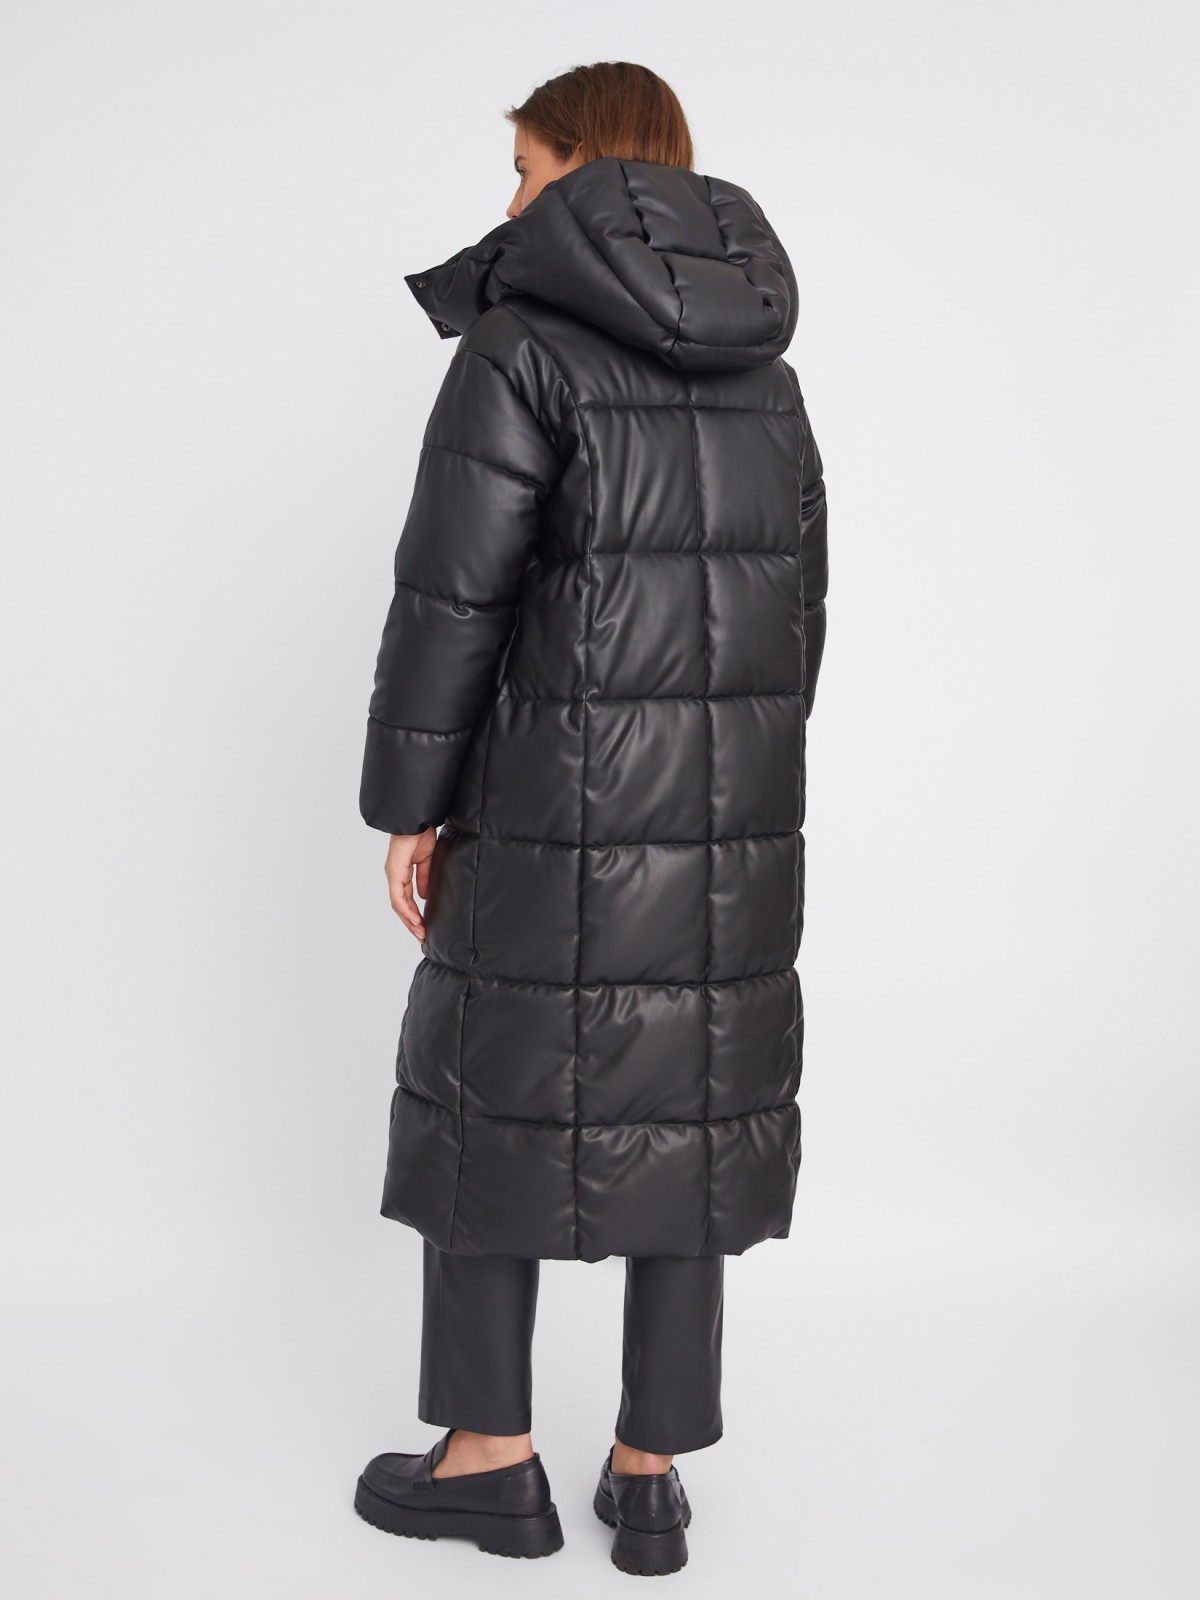 Тёплая стёганая куртка-пальто из экокожи с капюшоном и двойным воротником